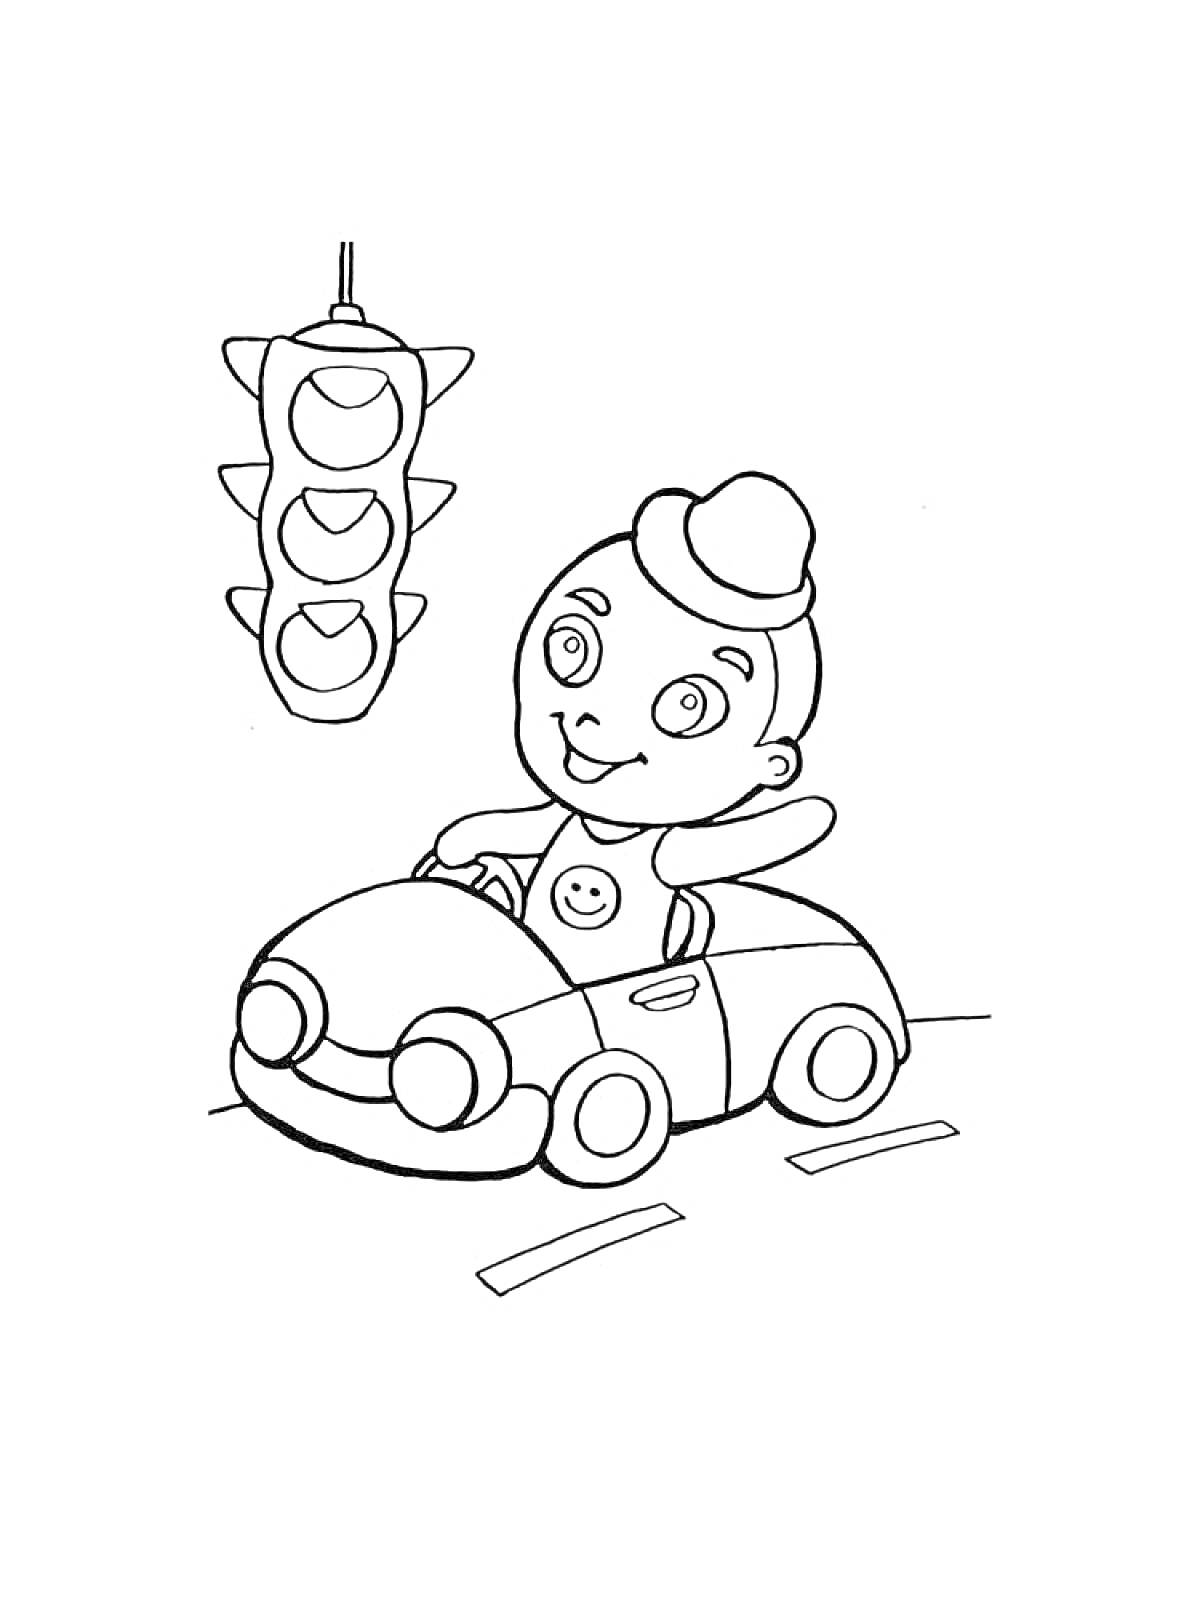 Раскраска Ребенок в машине под светофором